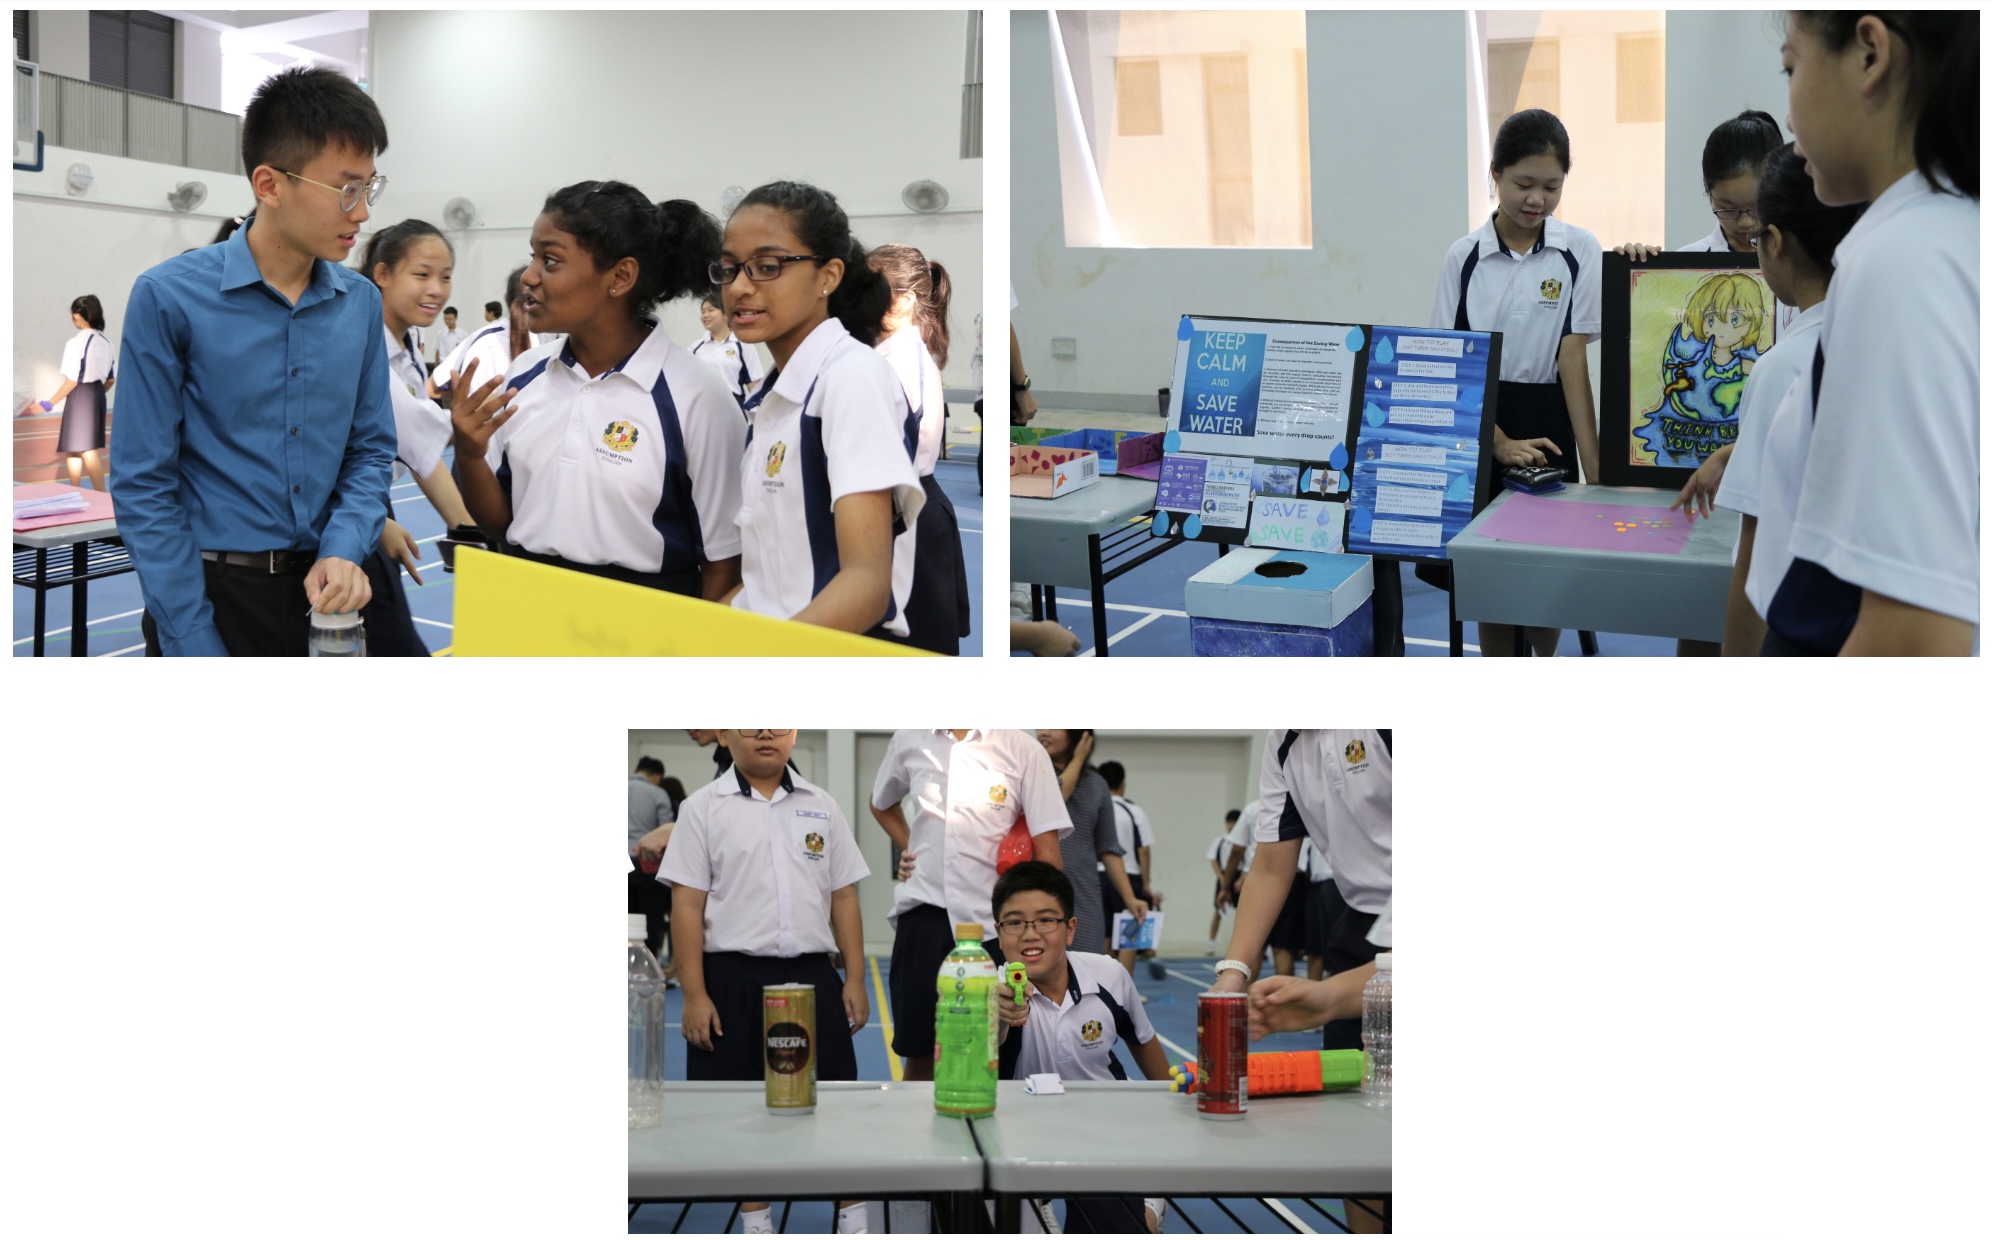 Sec 1 VIA - Improving School Environment